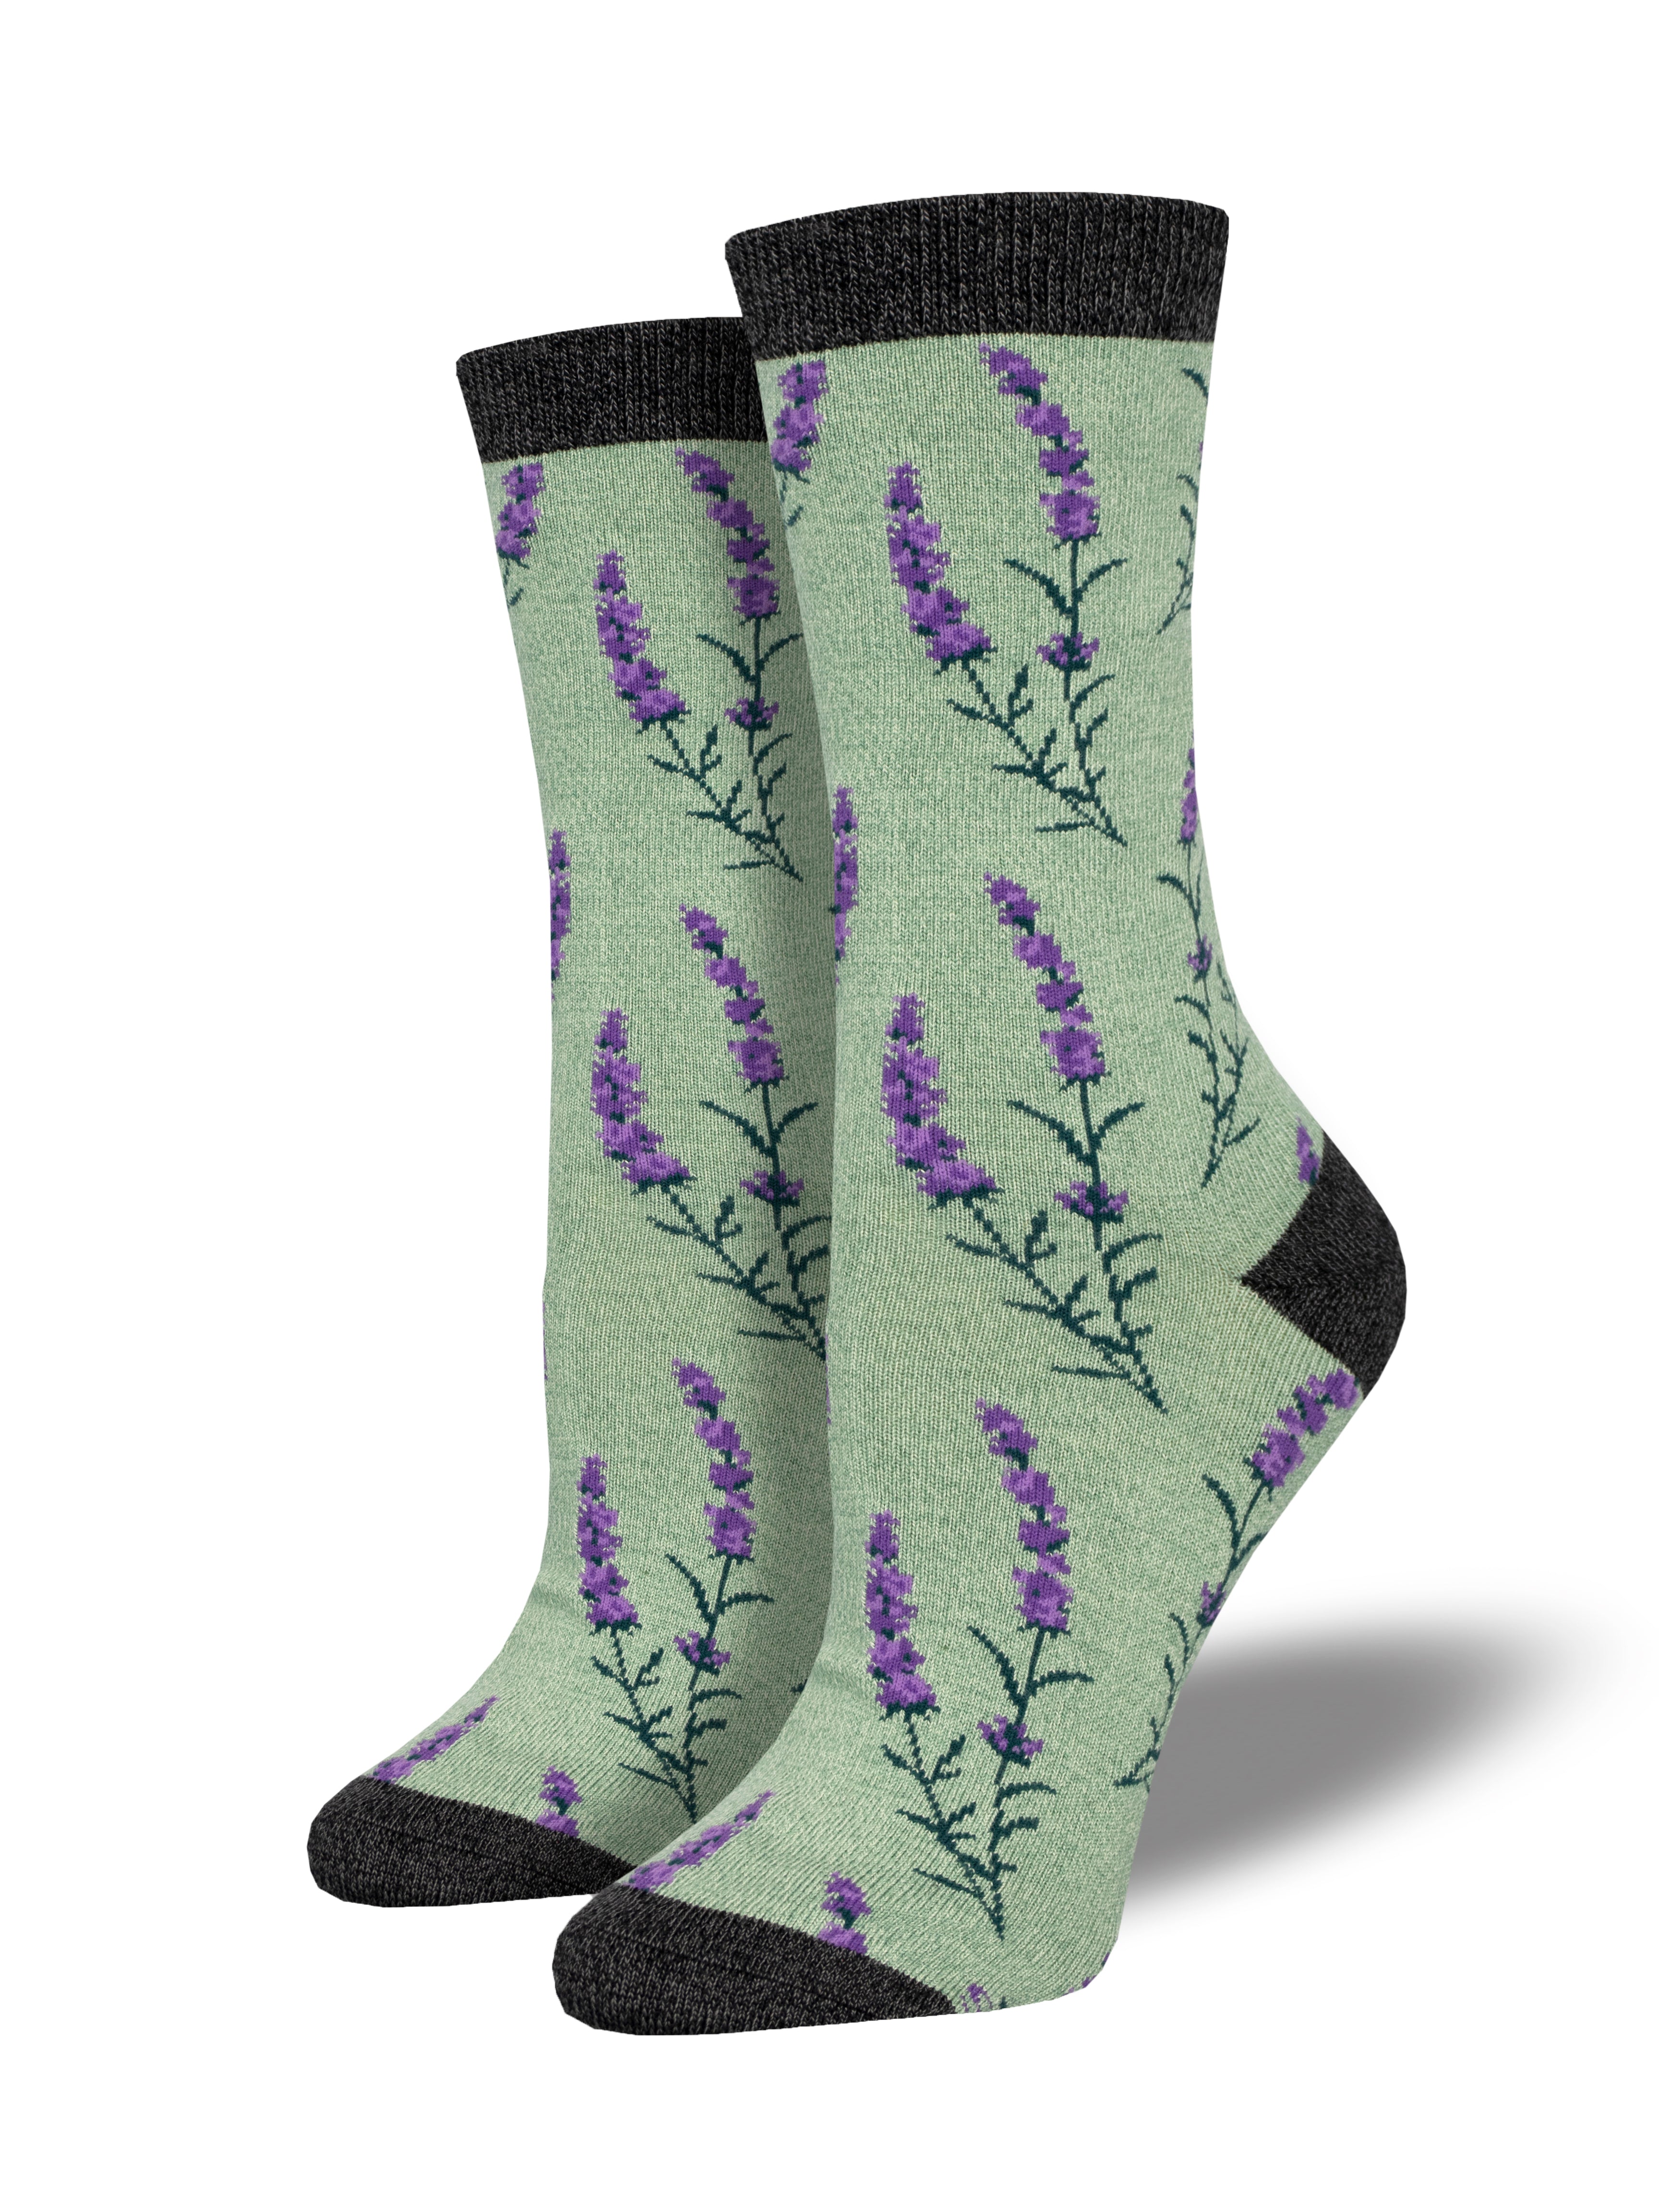 Women's Bamboo "Lovely Lavender" Socks